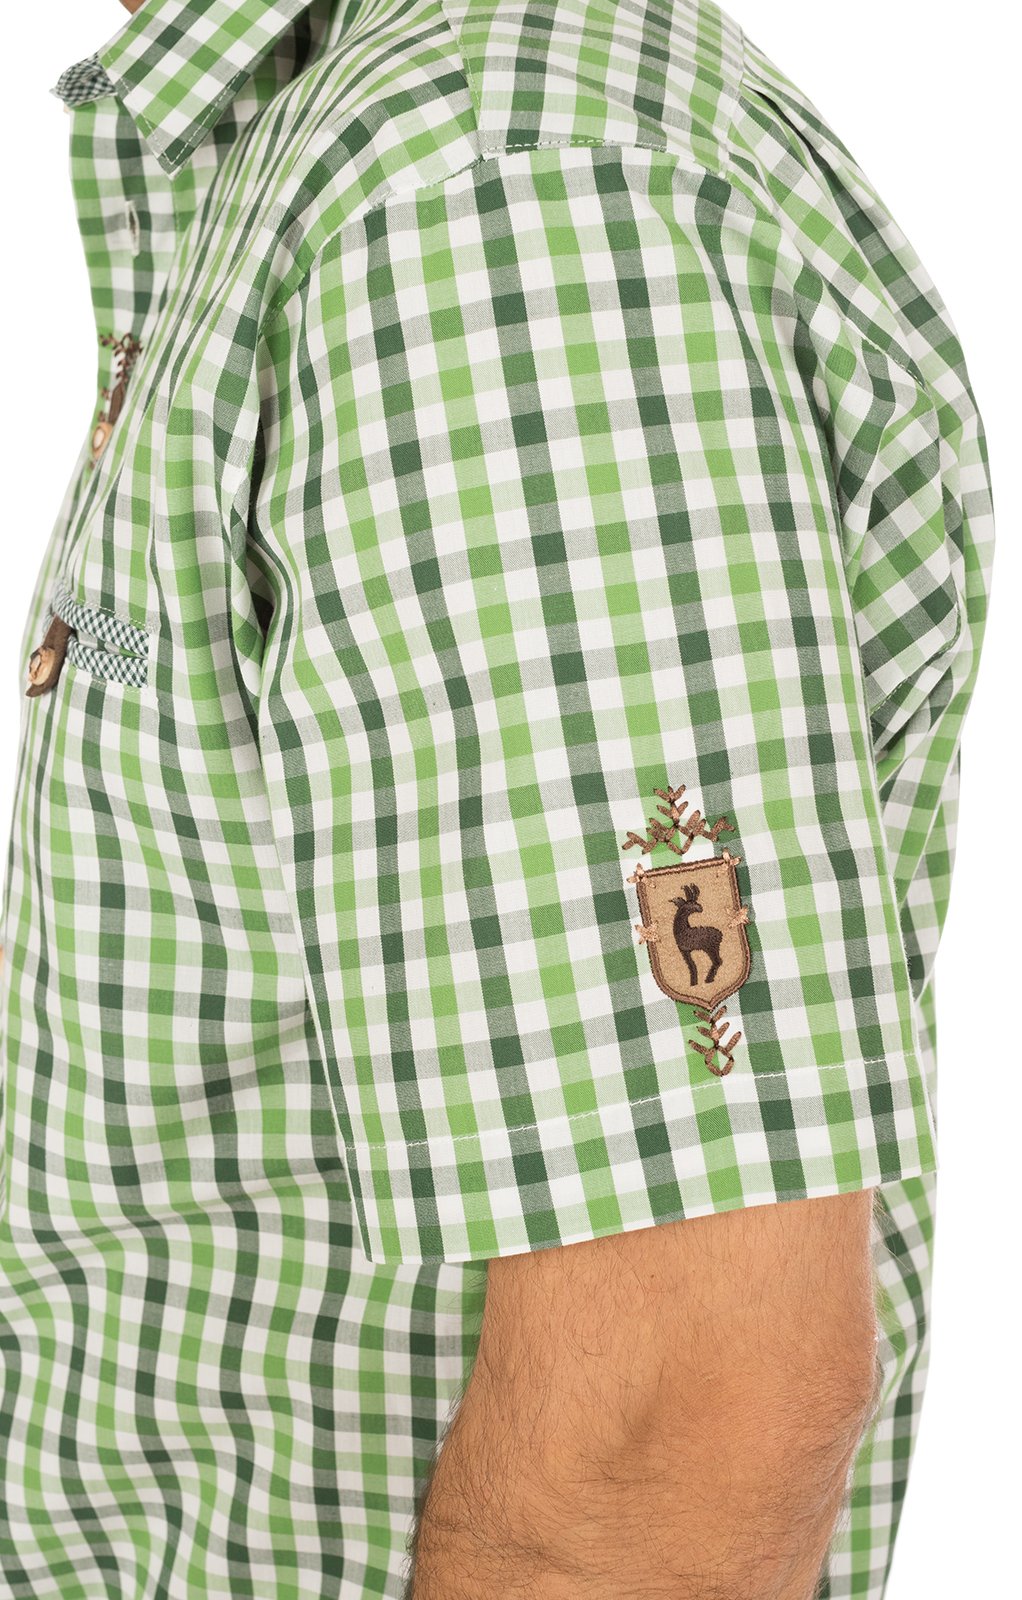 weitere Bilder von German traditional shirt short arms green